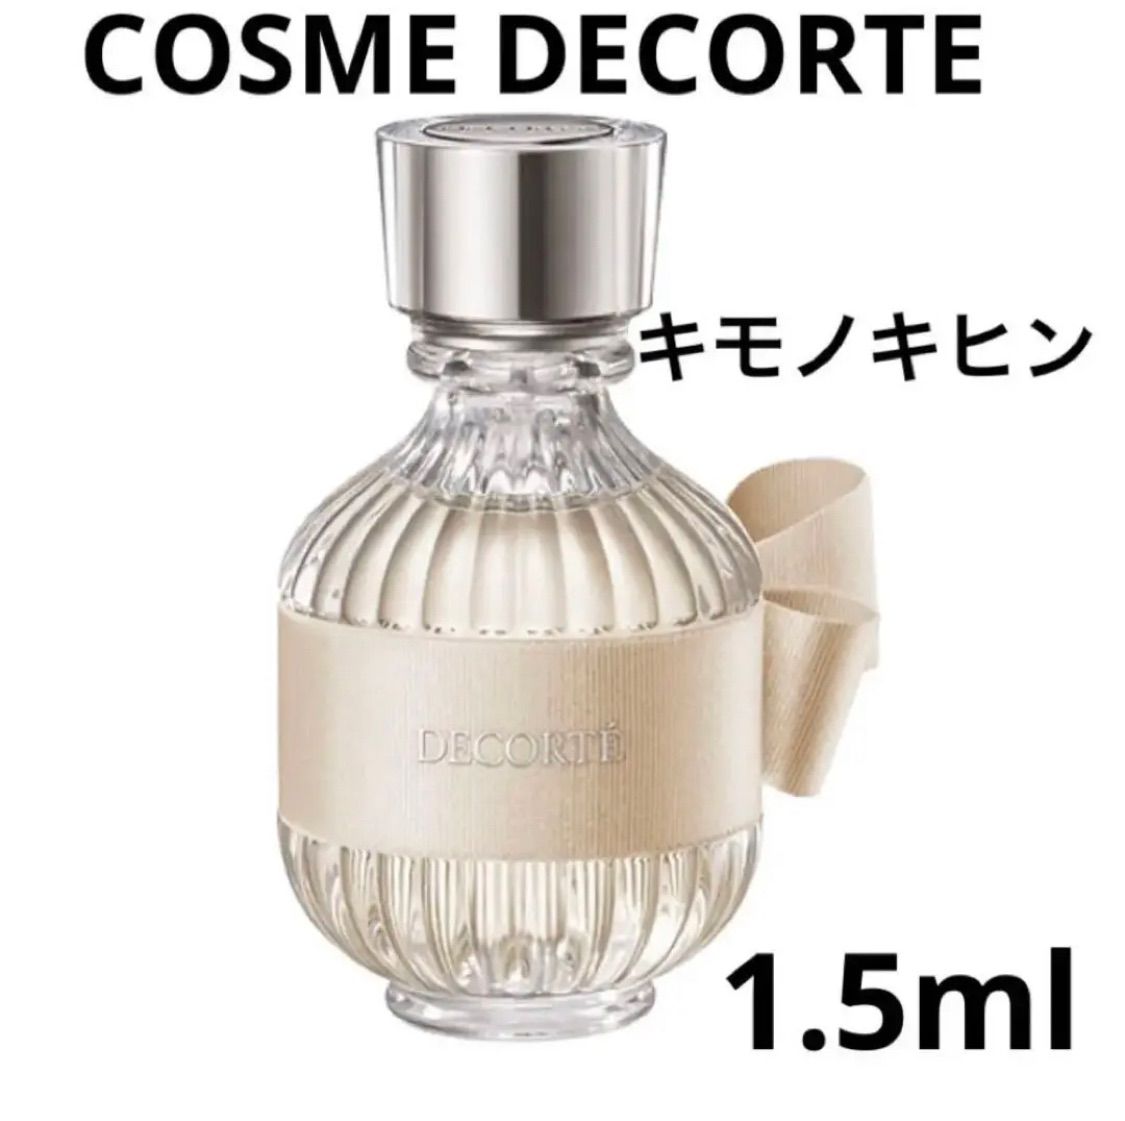 コスメデコルテ COSME DECORTE キモノ キヒン 1.5ml 香水 ガラス製